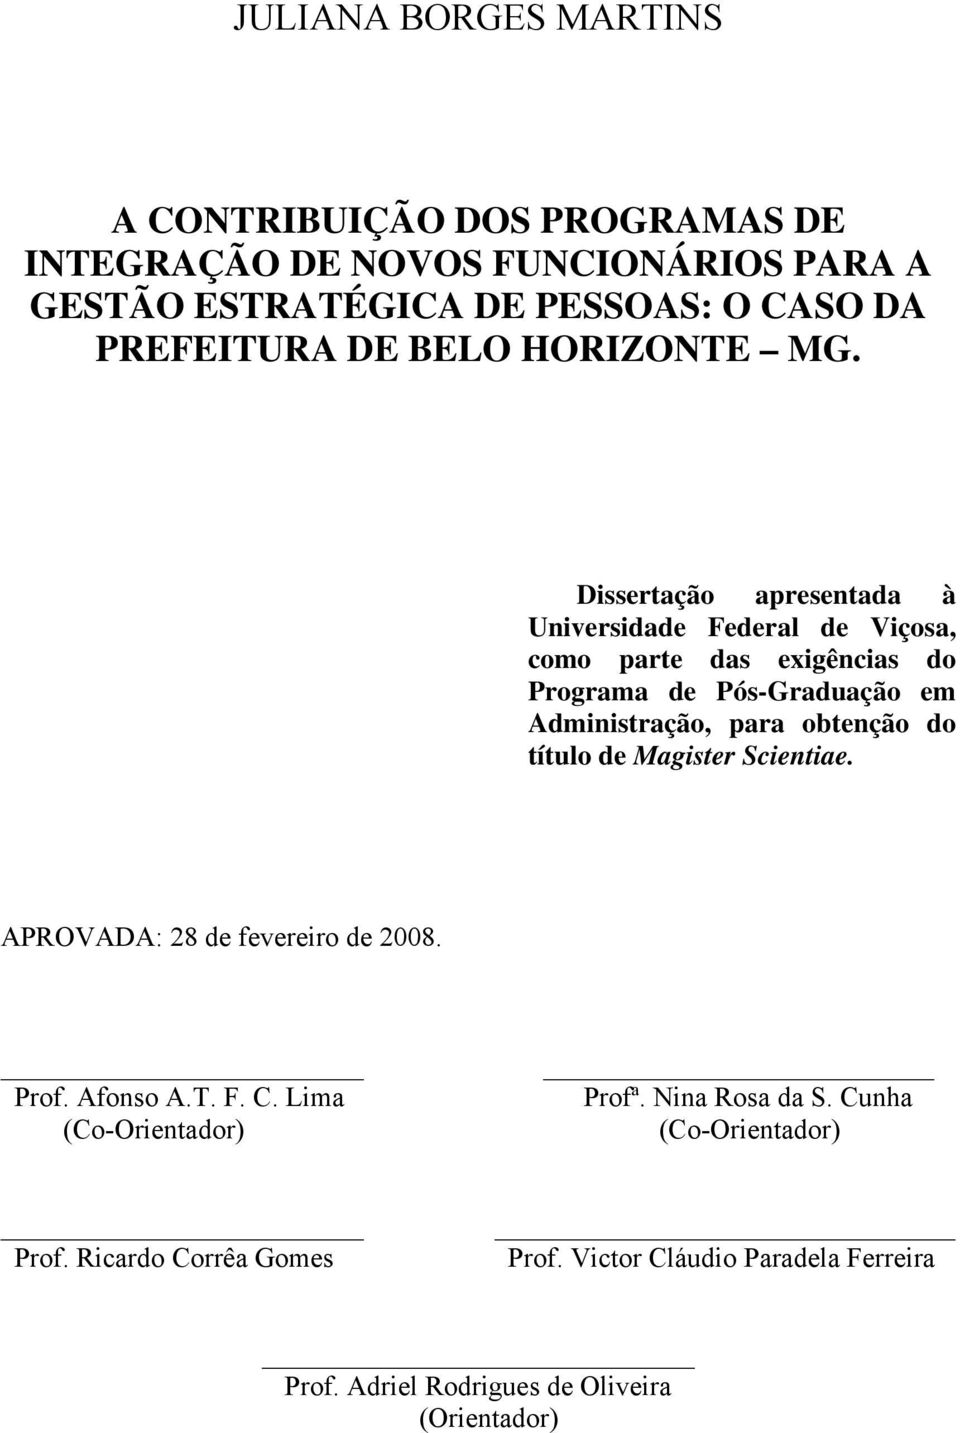 Dissertação apresentada à Universidade Federal de Viçosa, como parte das exigências do Programa de Pós-Graduação em Administração, para obtenção